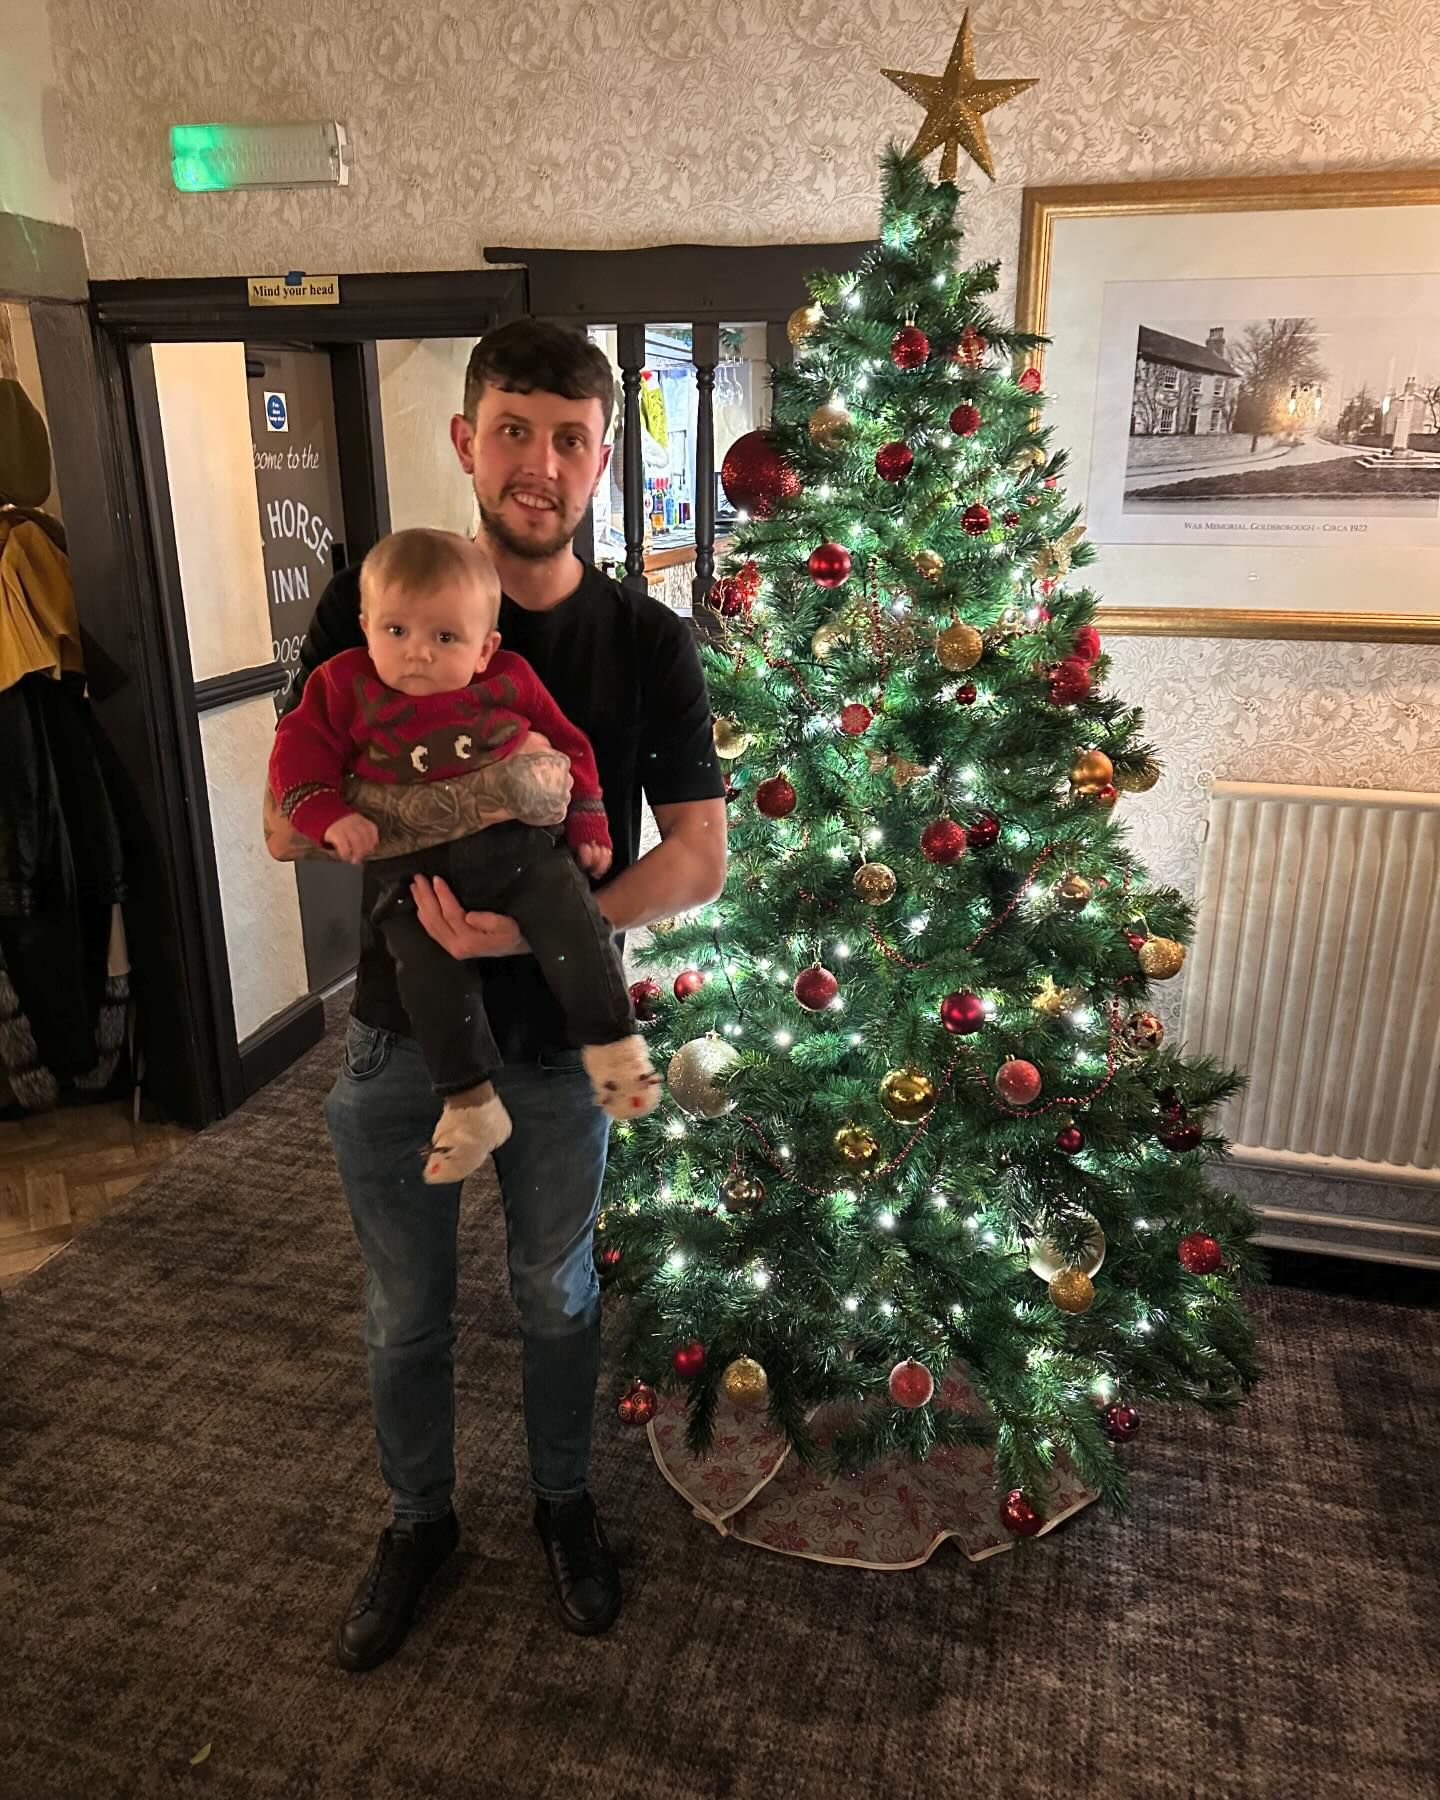 Nat hielt dieses Weihnachten stolz seinen Sohn für ein süßes Foto in den Armen